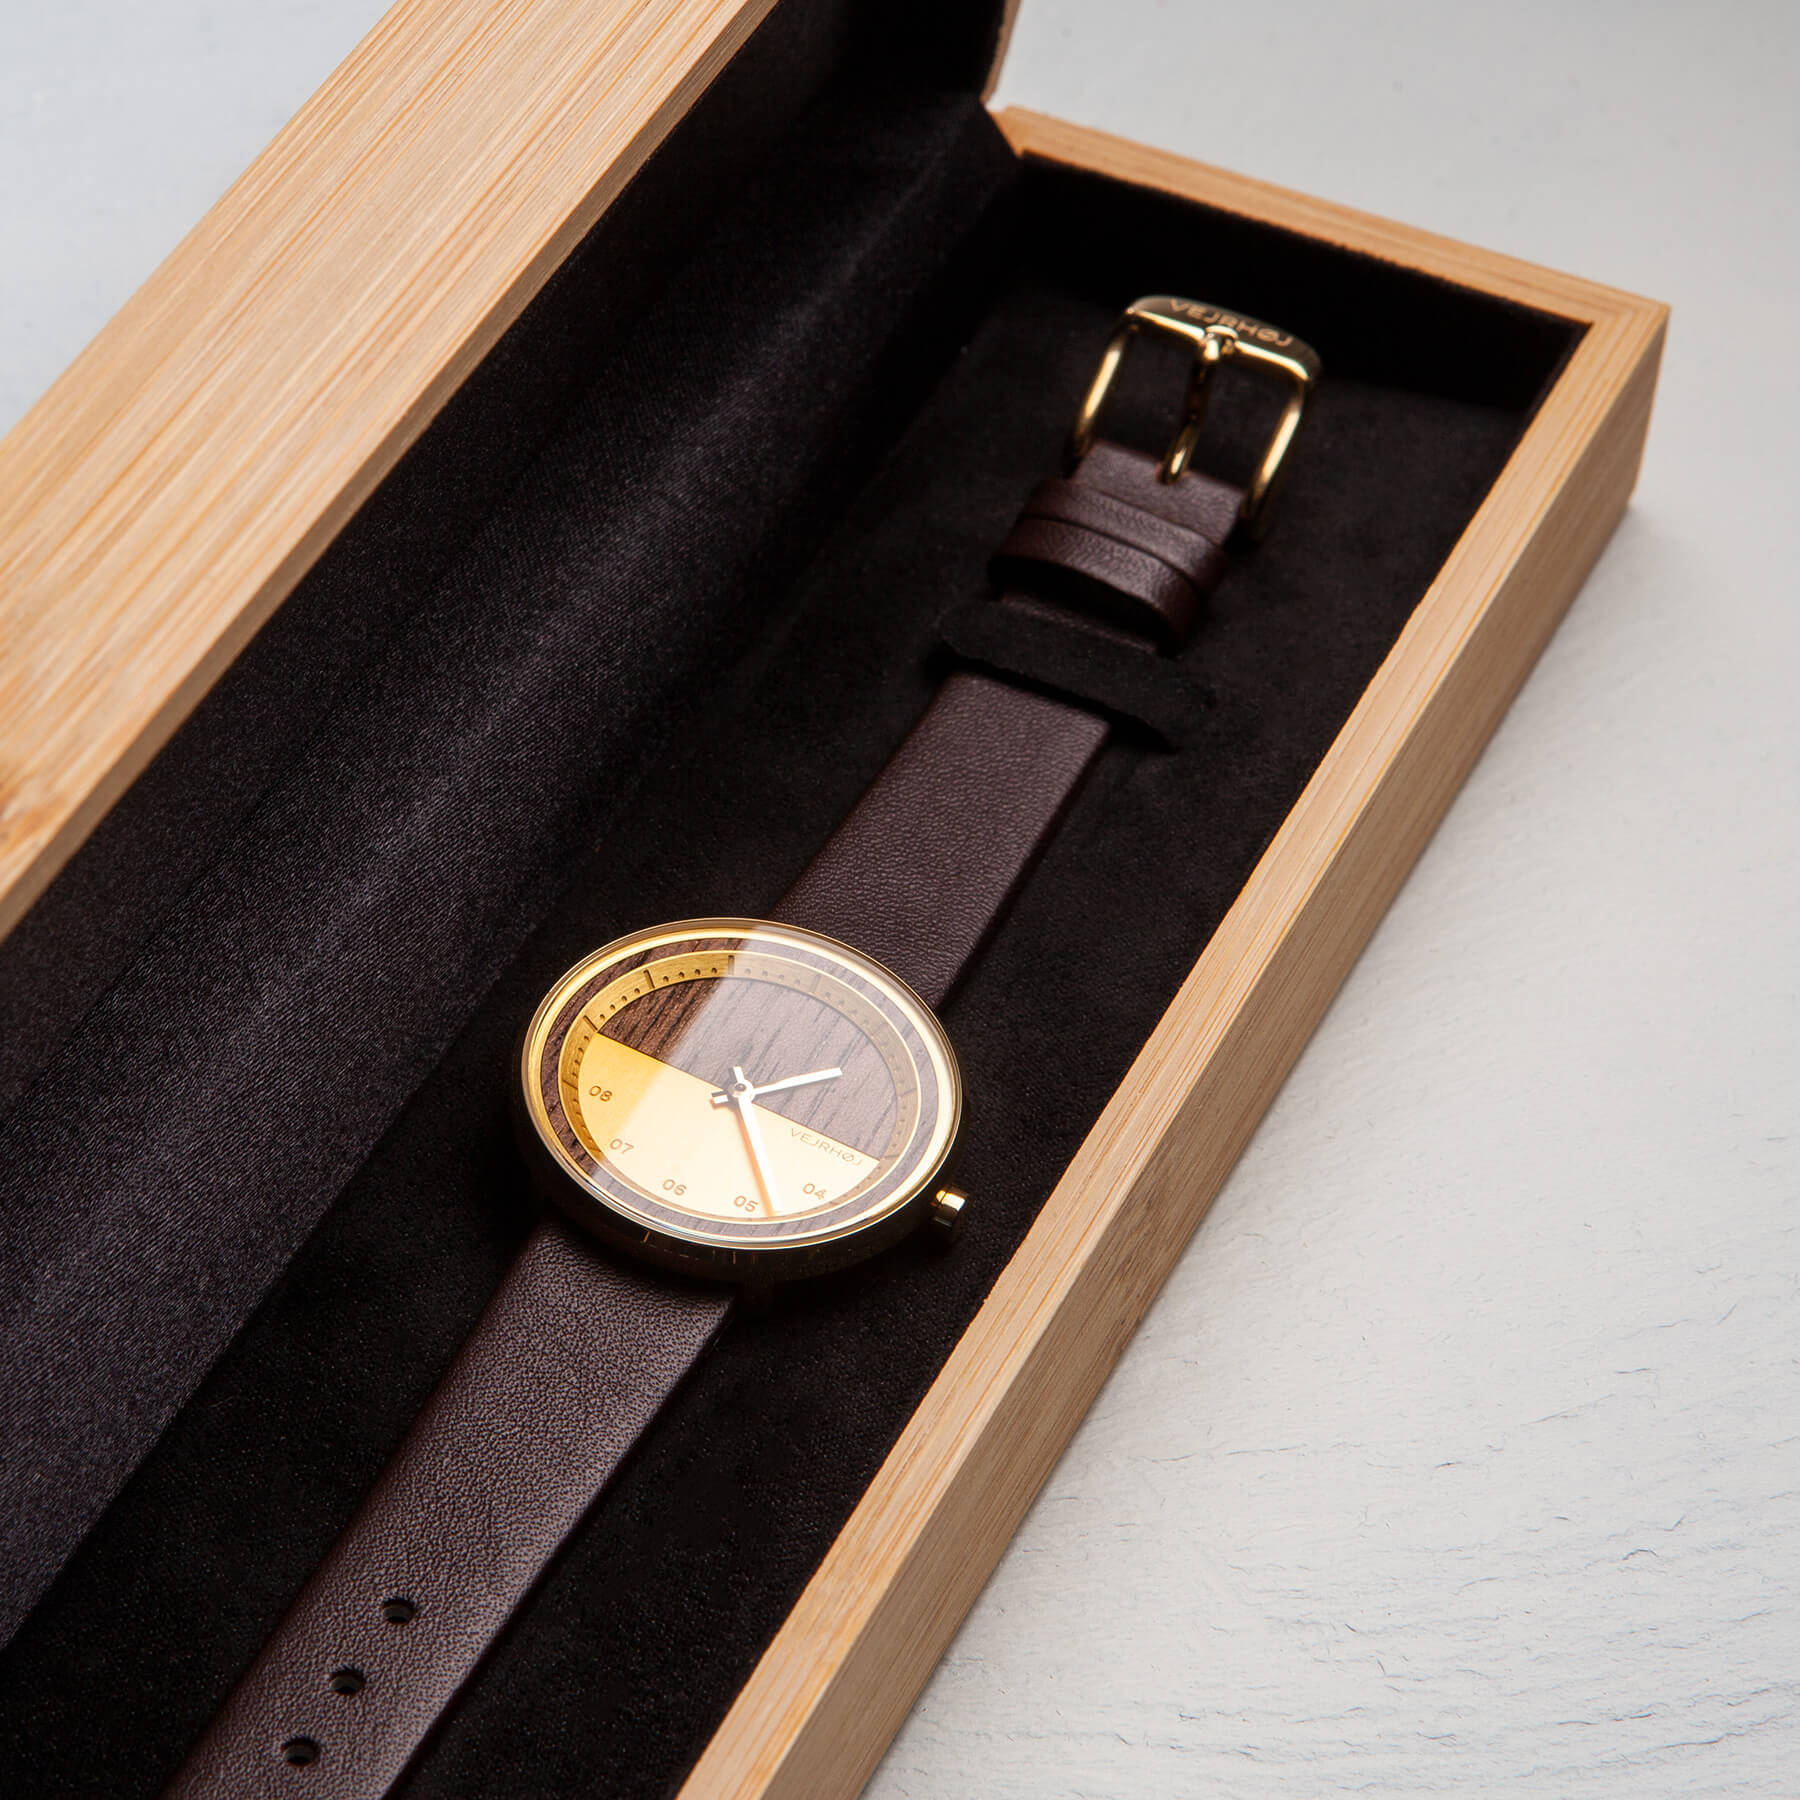 竹箱の中にゴールドと茶色の腕時計が置かれている